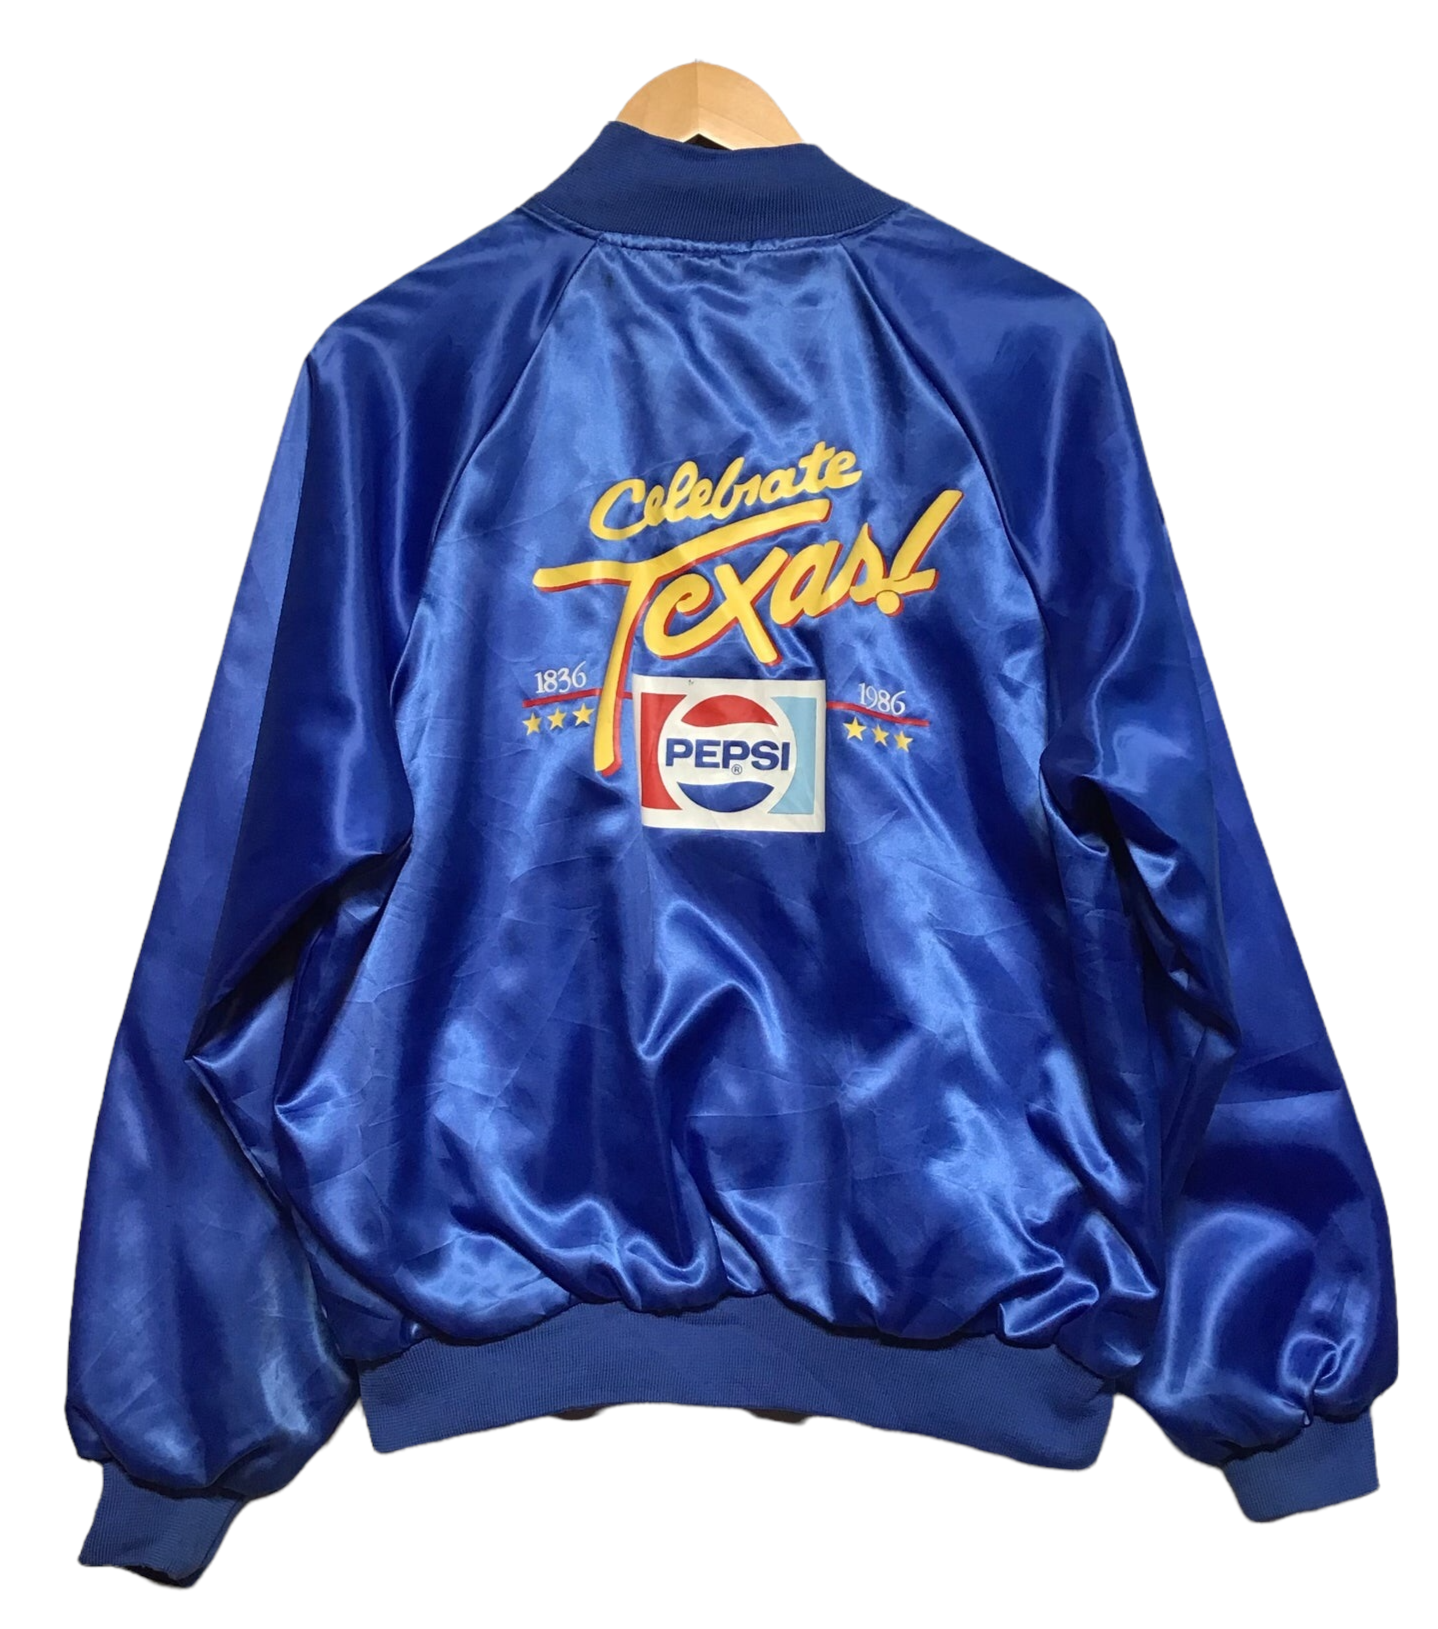 Celebrate Texas Pepsi Varsity Jacket (Size XL)